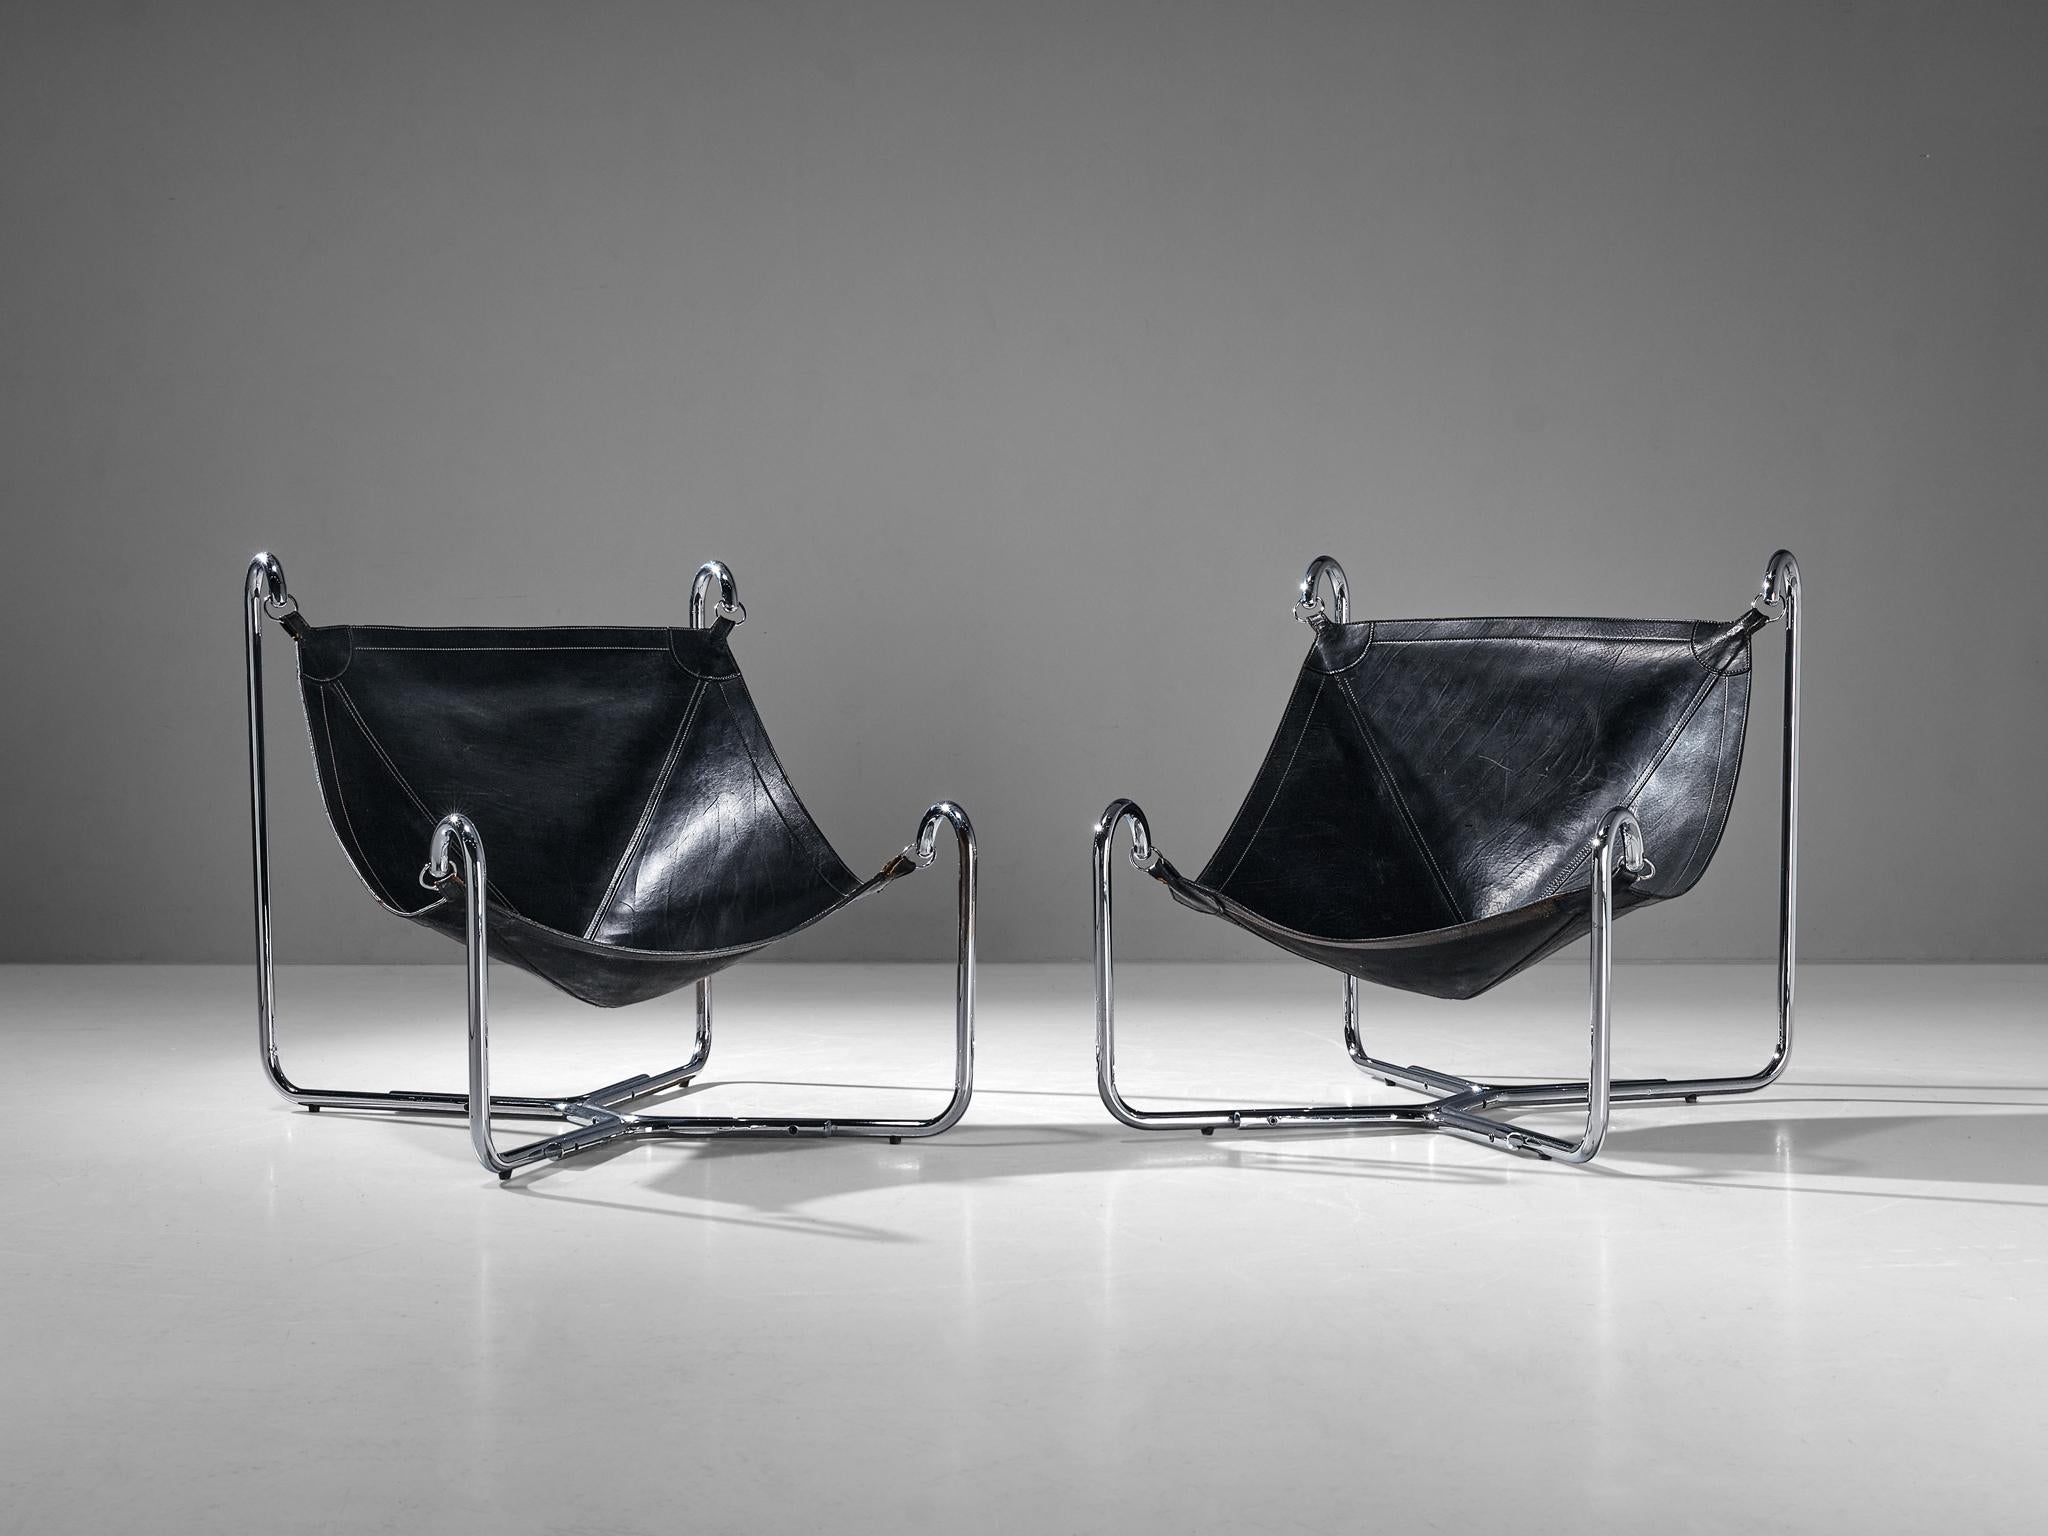 Gianni Pareschi et Ezio Didone pour Busnelli, paire de chaises longues 'Baffo', métal chromé, cuir, Italie, design 1969

Ces chaises longues 